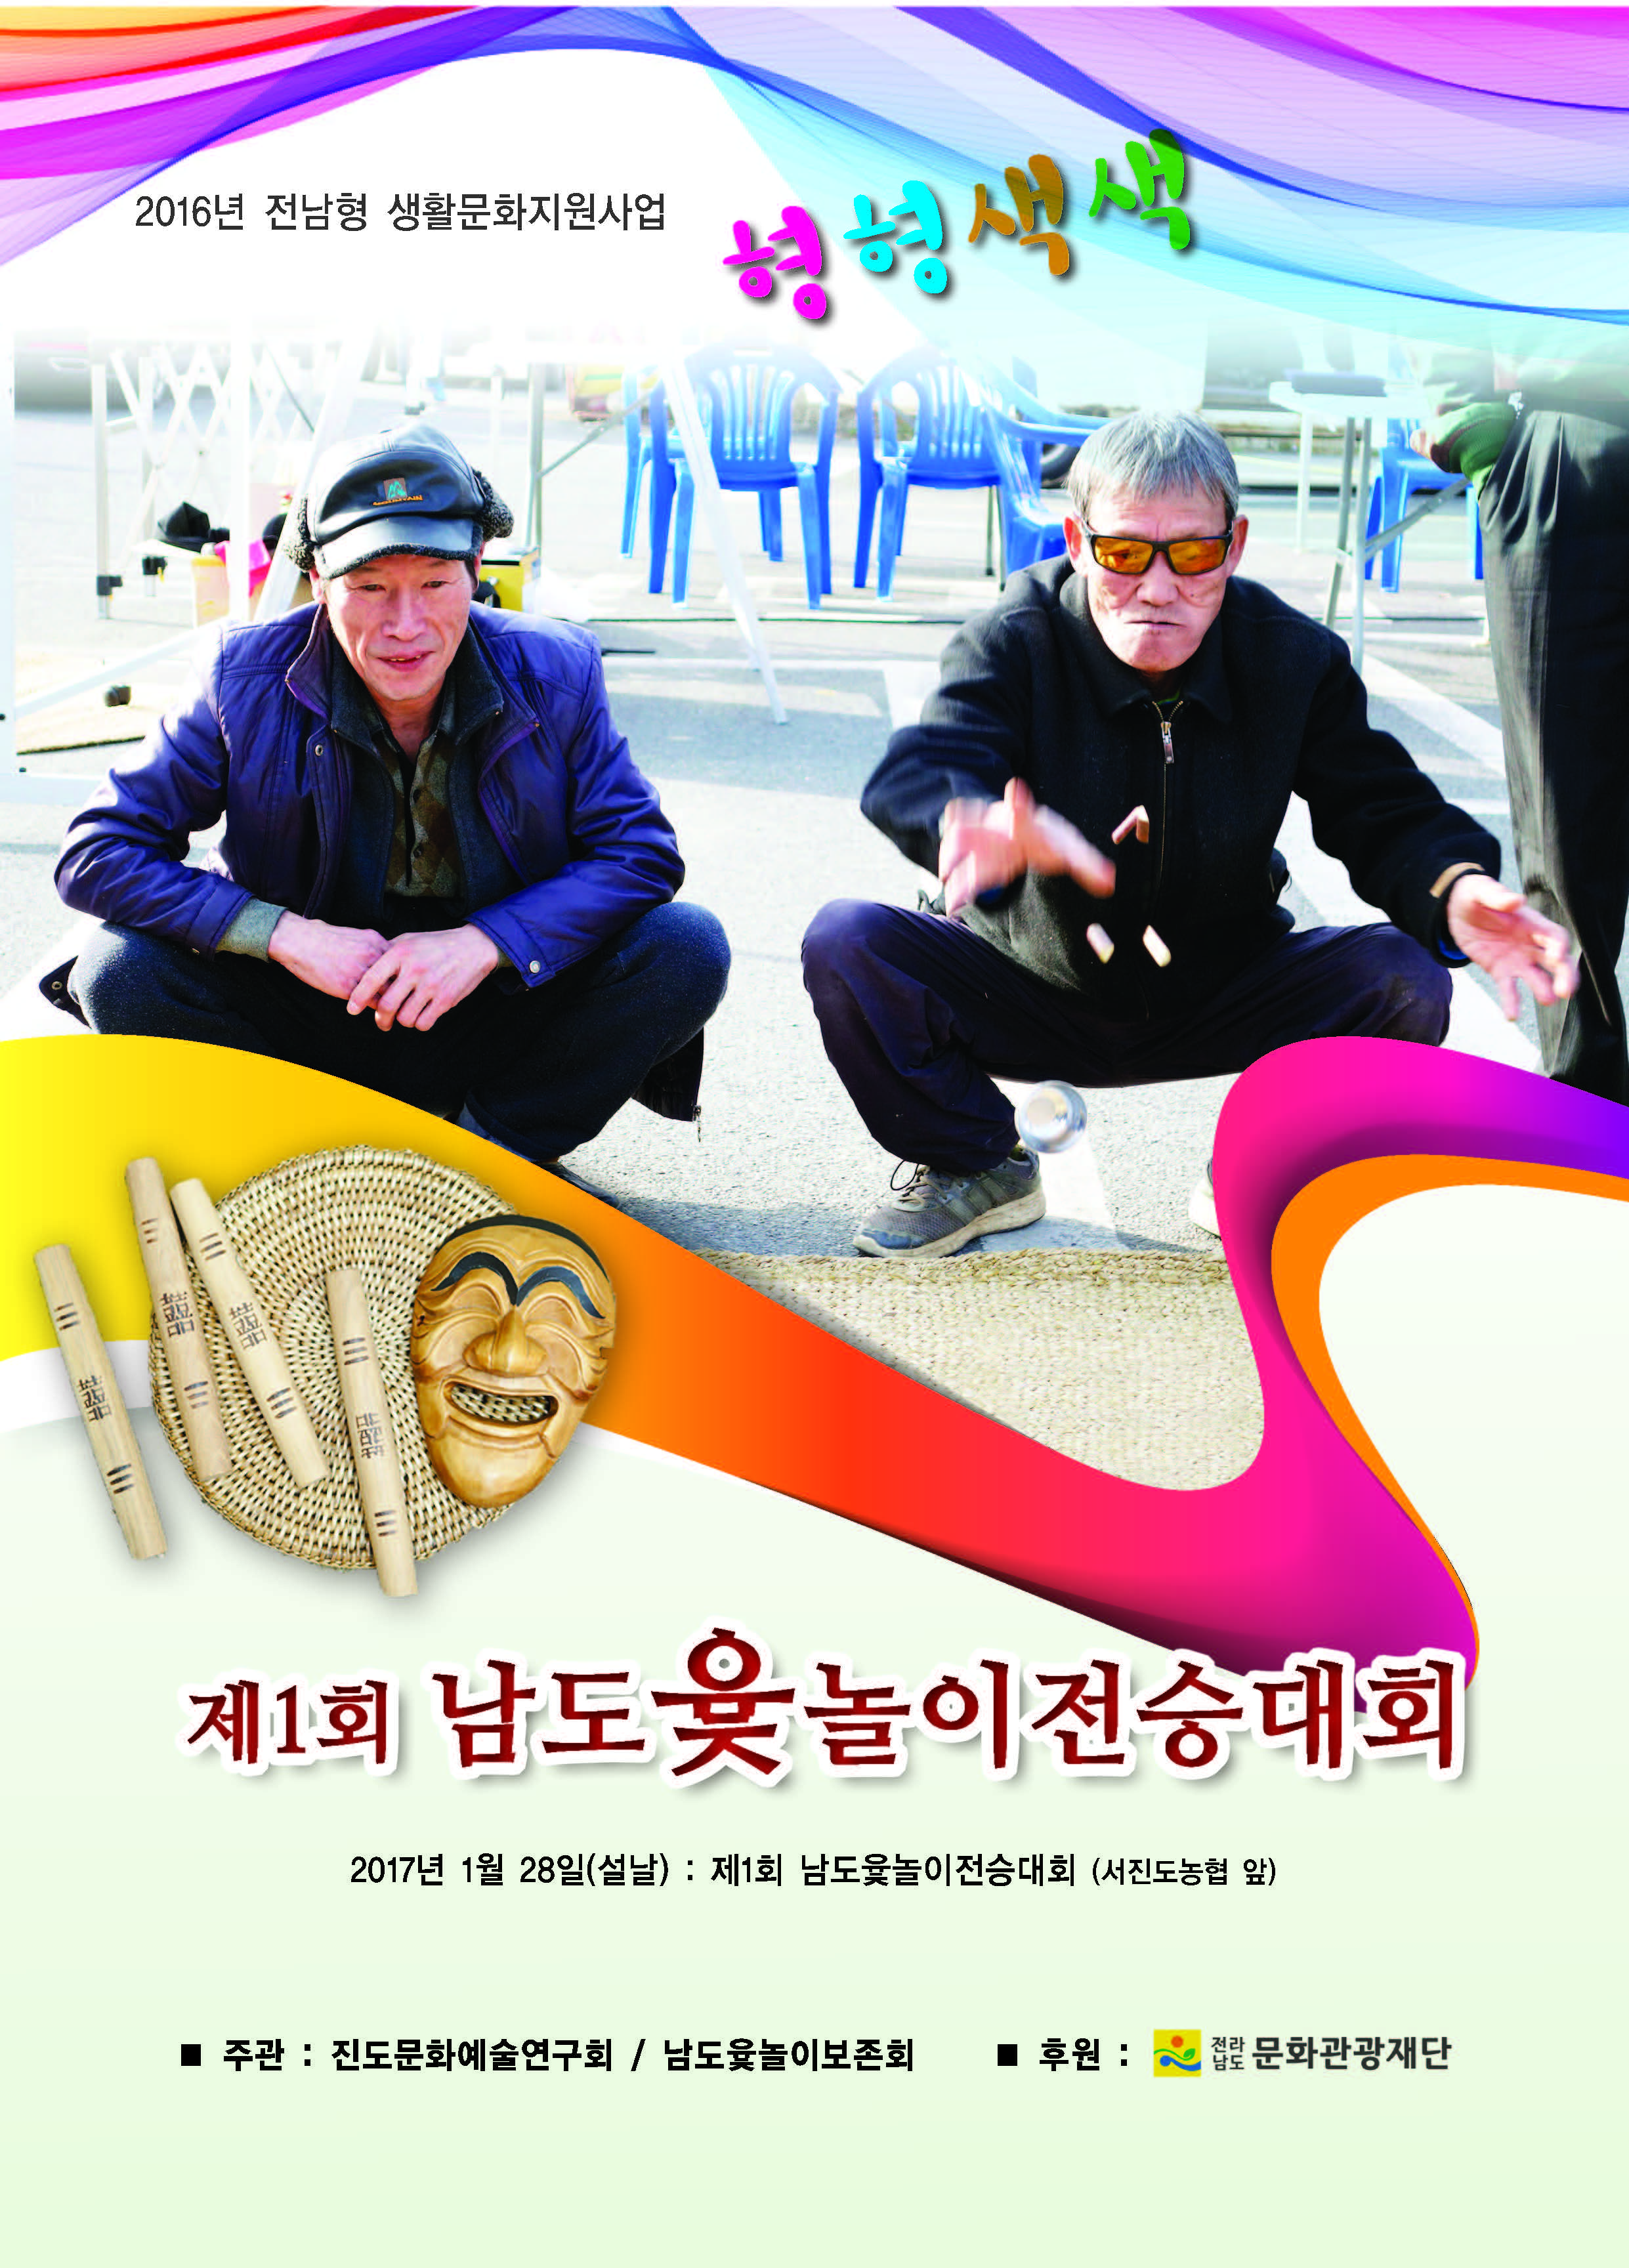 설날맞이~~ 제1회 남도윷놀이전승대회 보고 첨부#1